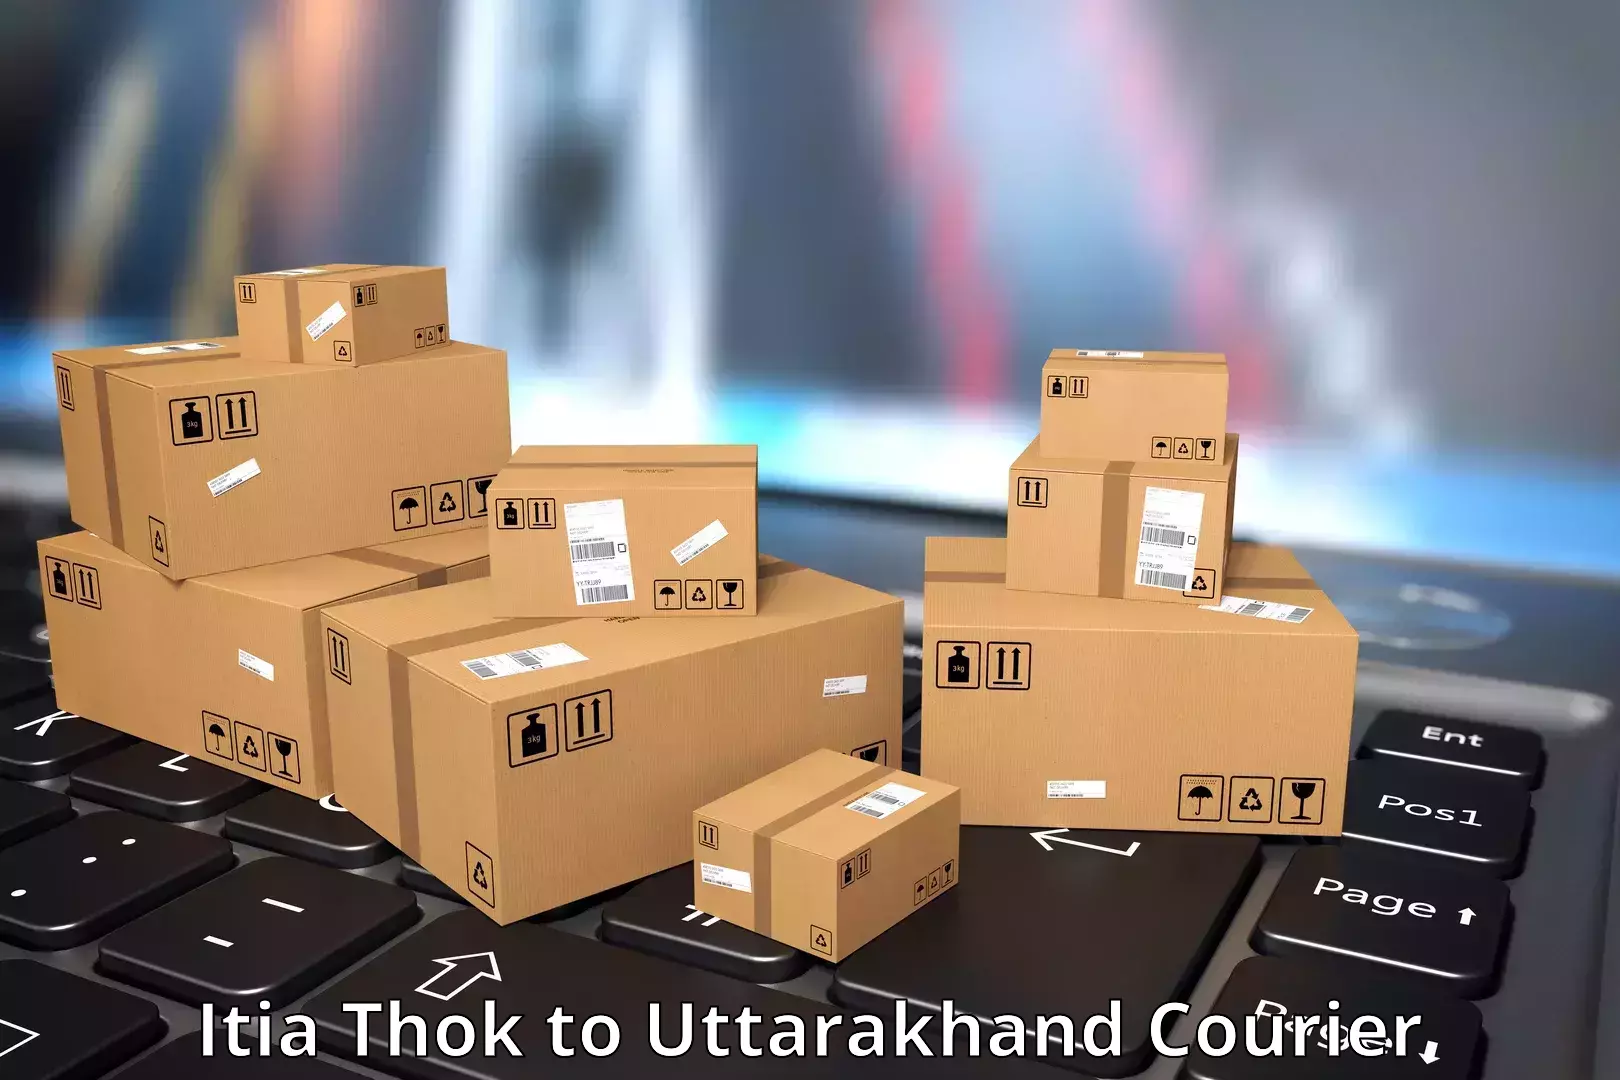 Professional courier services Itia Thok to Kotdwara